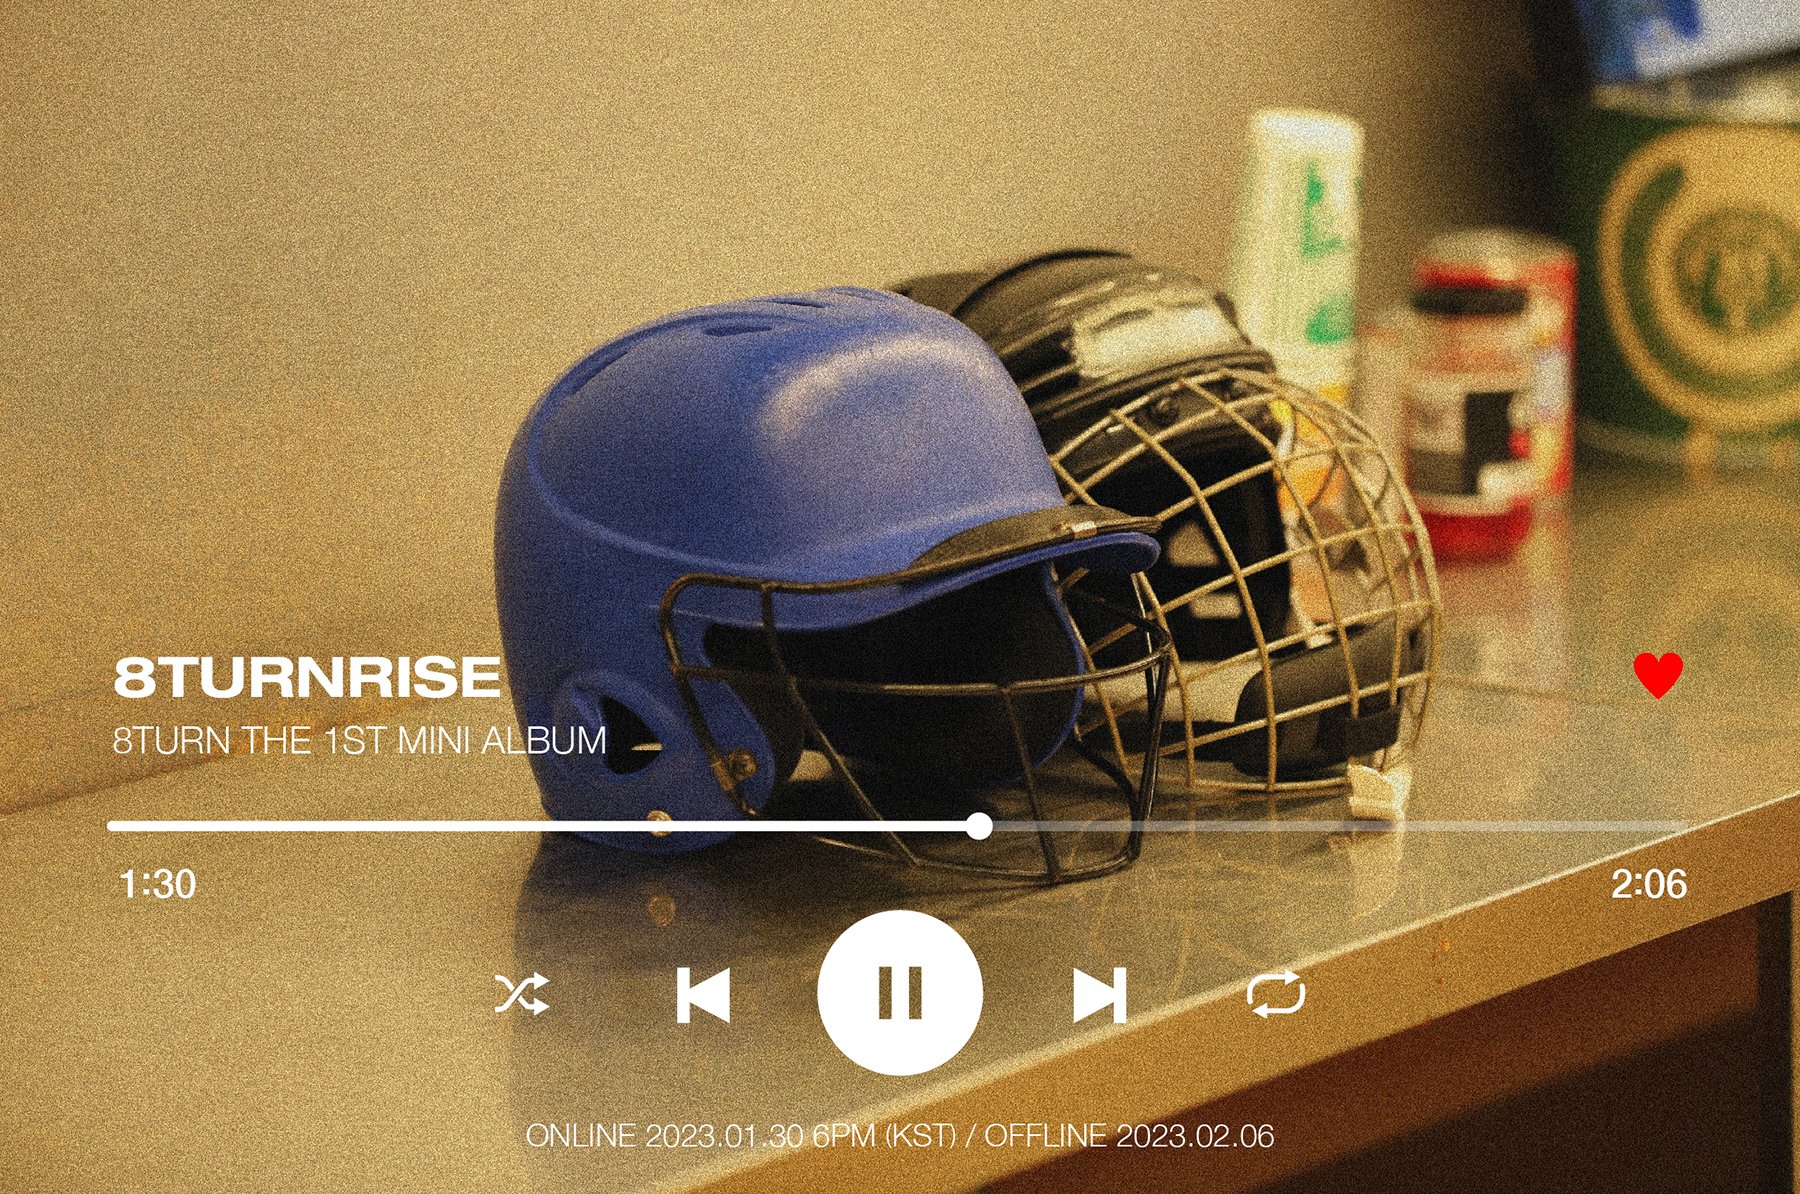 [정보/소식] 8TURN (에잇턴) The 1st Mini Album [8TURNRISE] INSERT TEASER | 인스티즈